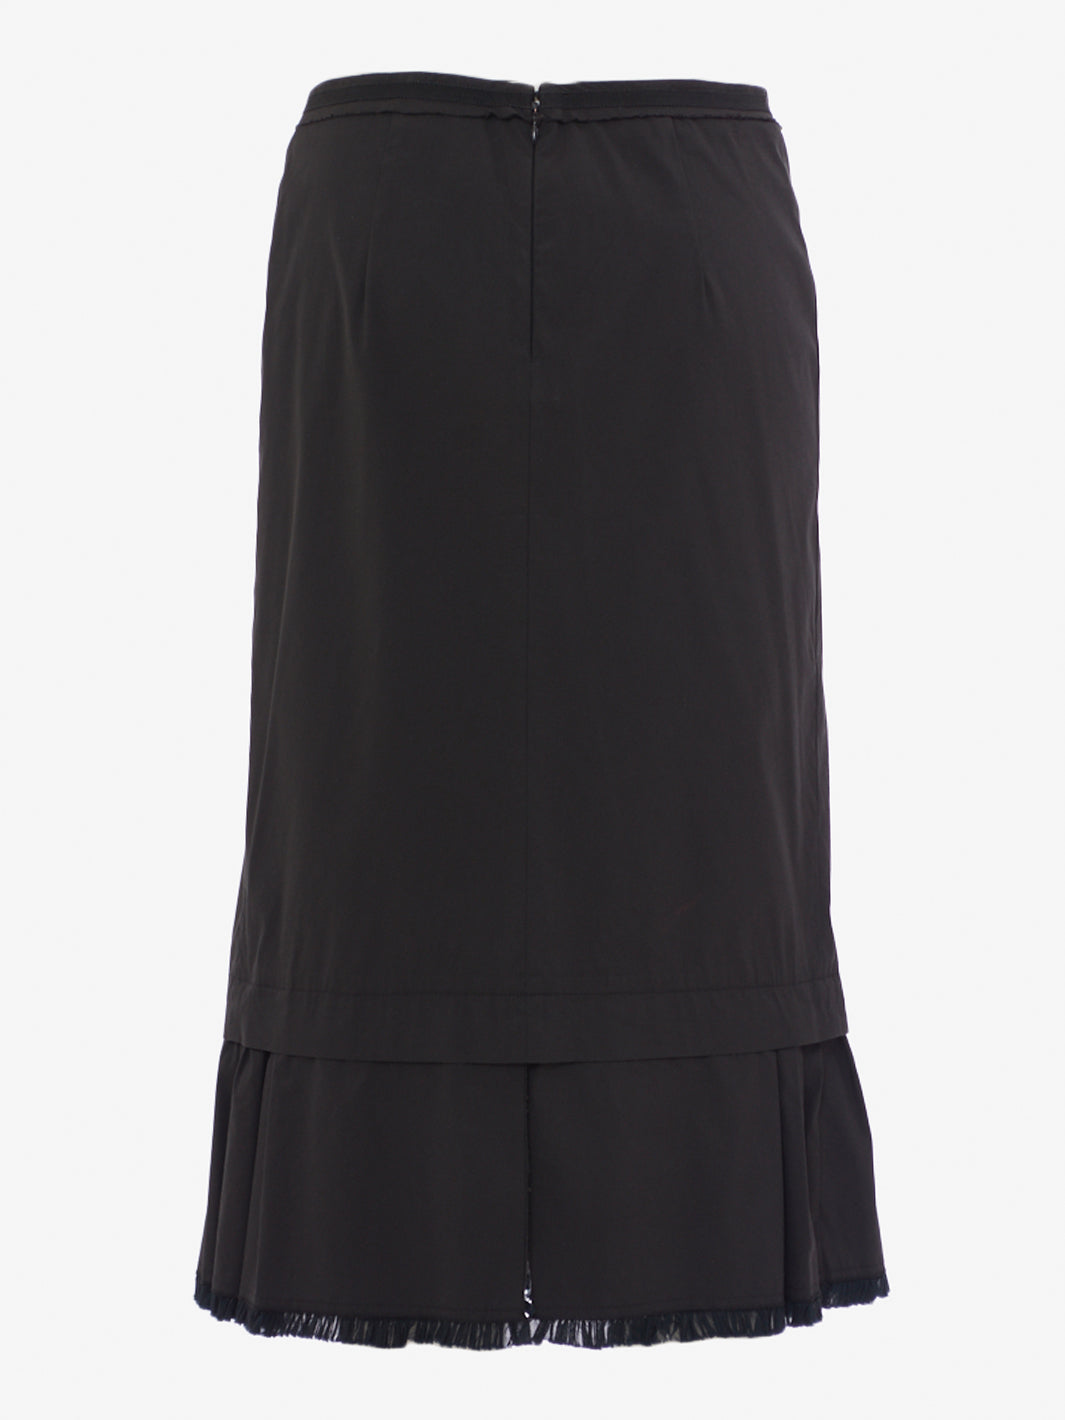 Prada black skirt with ruffle